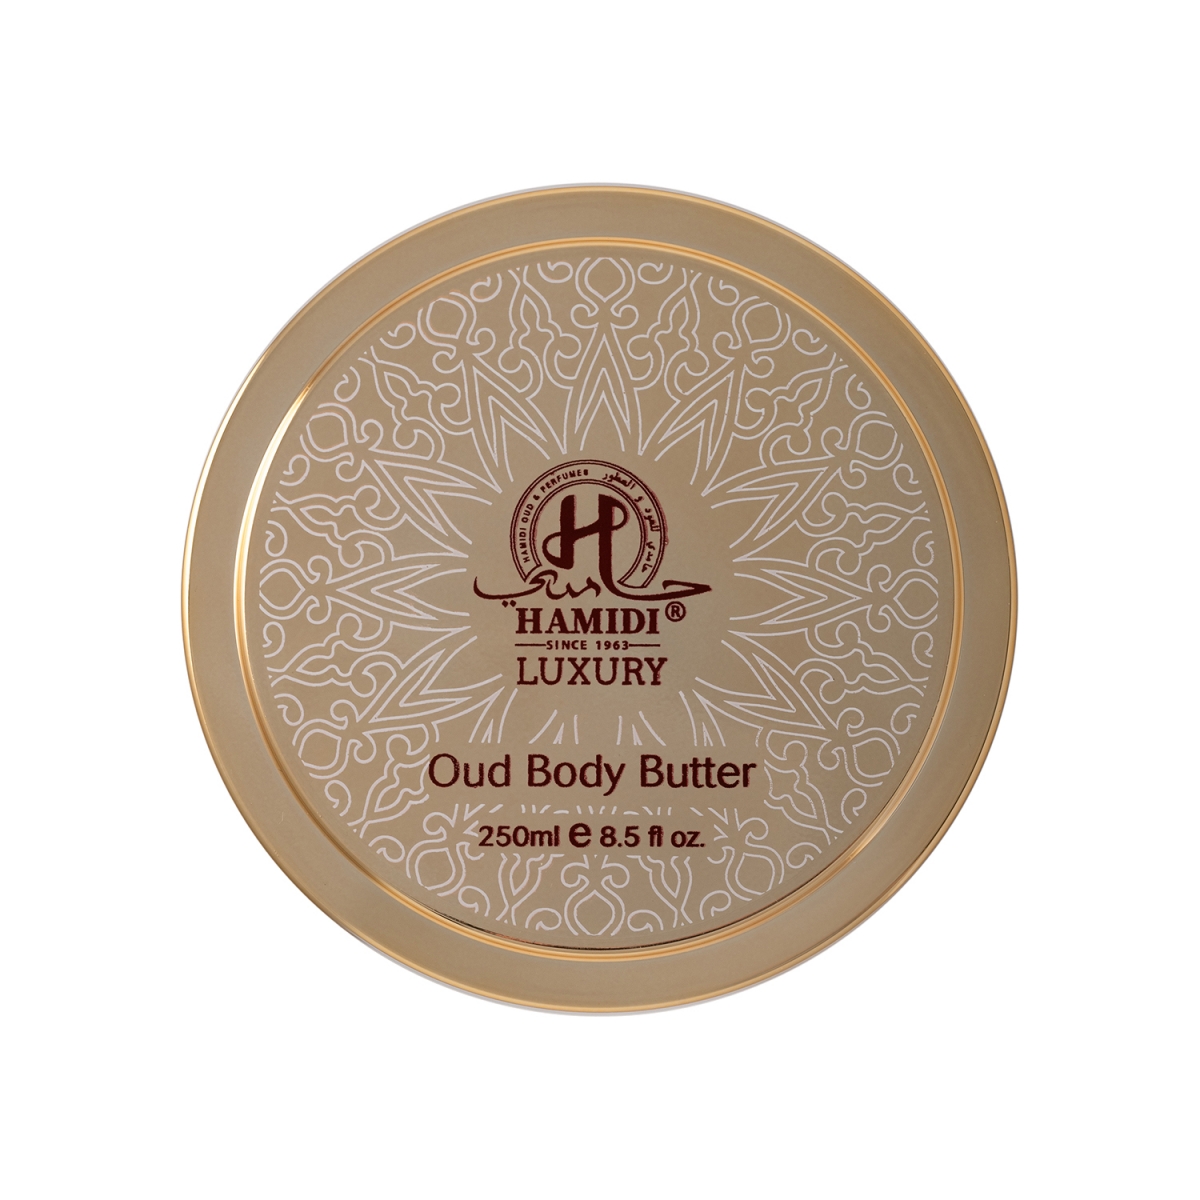 Oud Body Butter Hamidi Perfumes, Cosmetici, Arada Perfumes